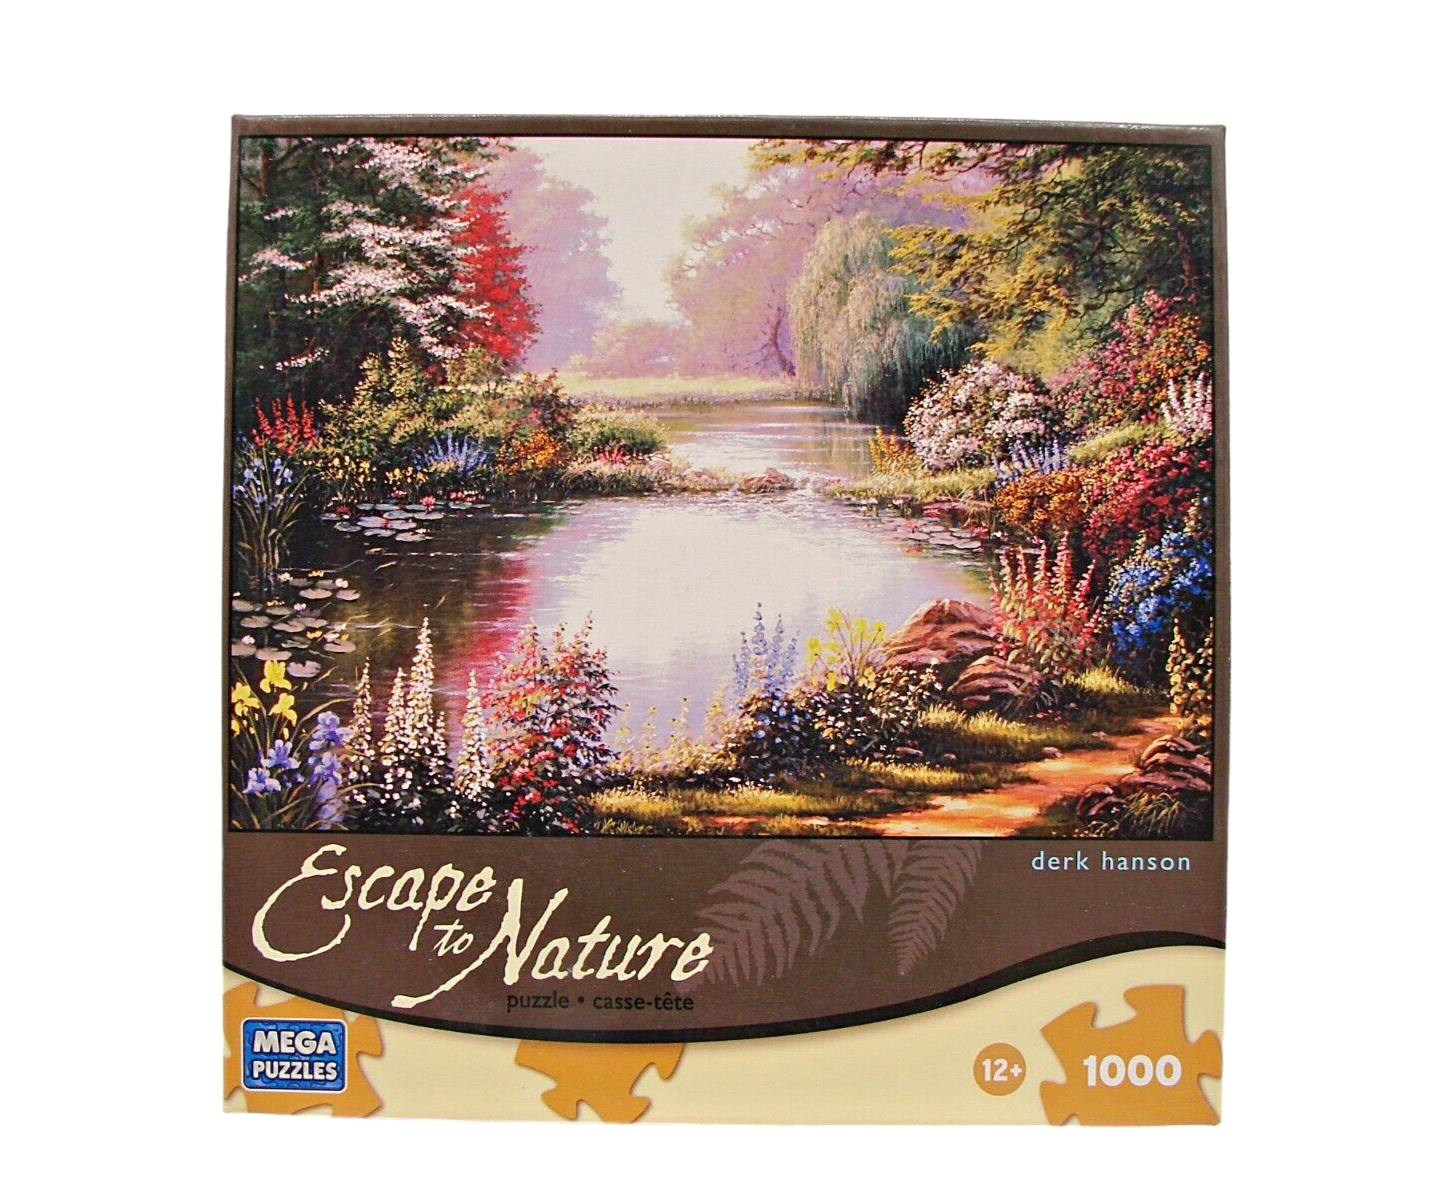 Escape To Nature 1000 Piece Jigsaw Mega Puzzle Mountains Lake Floral Derk Hanson - $9.72